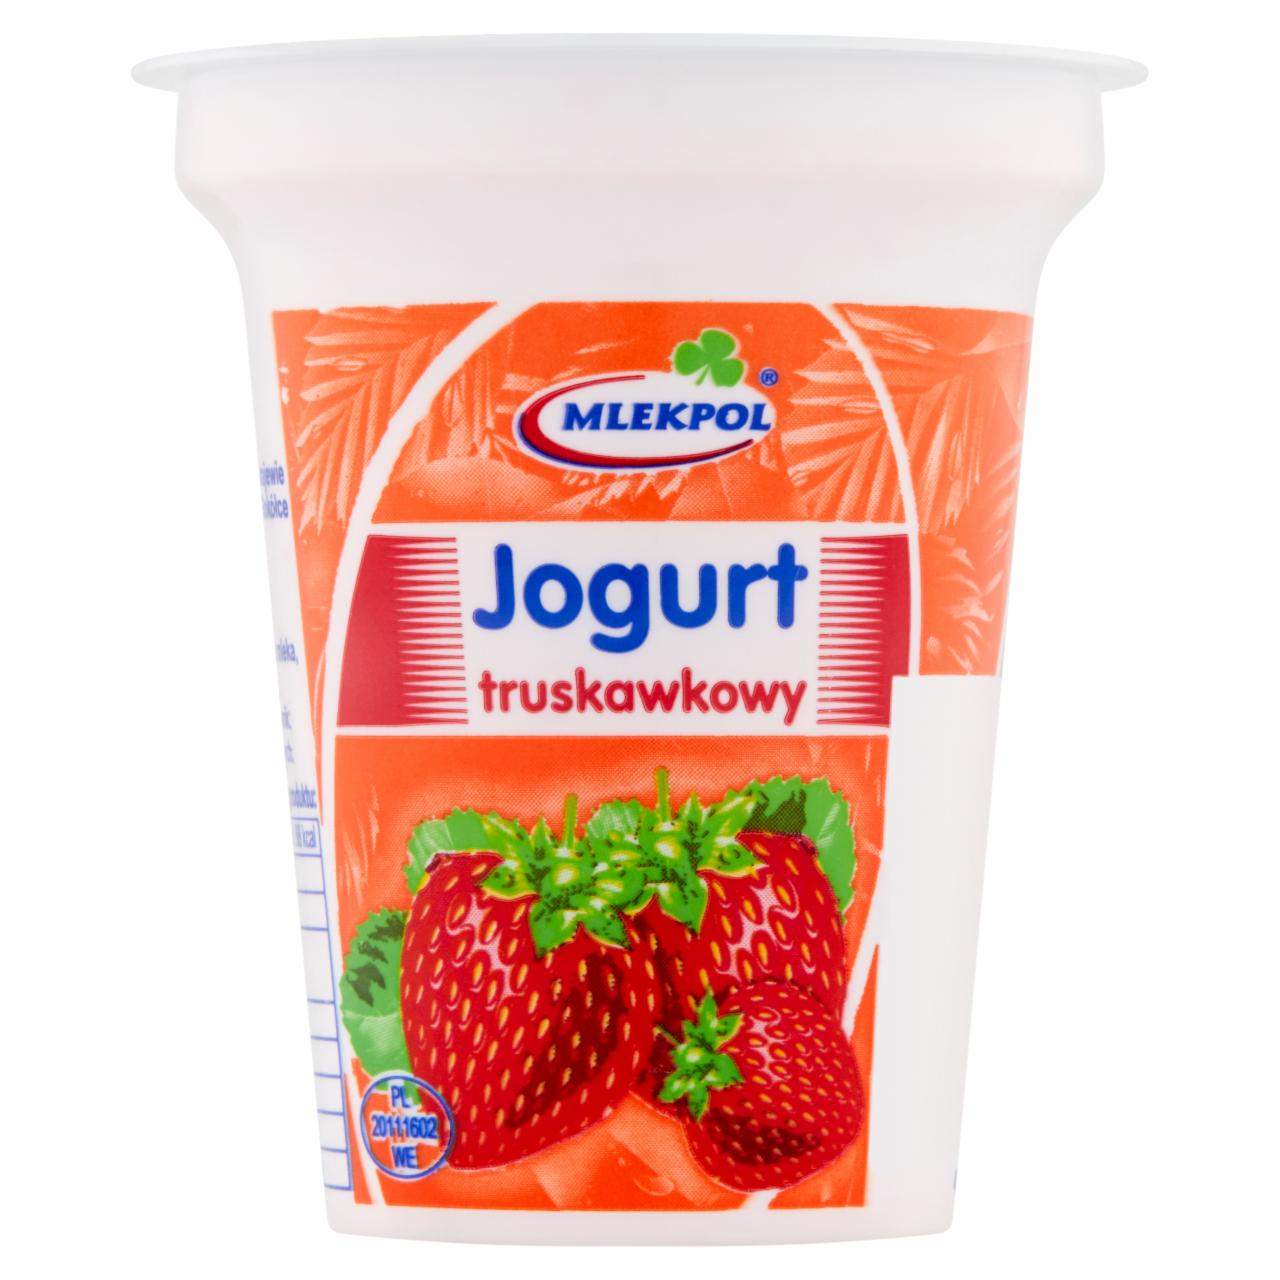 Zdjęcia - Mlekpol Jogurt truskawkowy 150 g